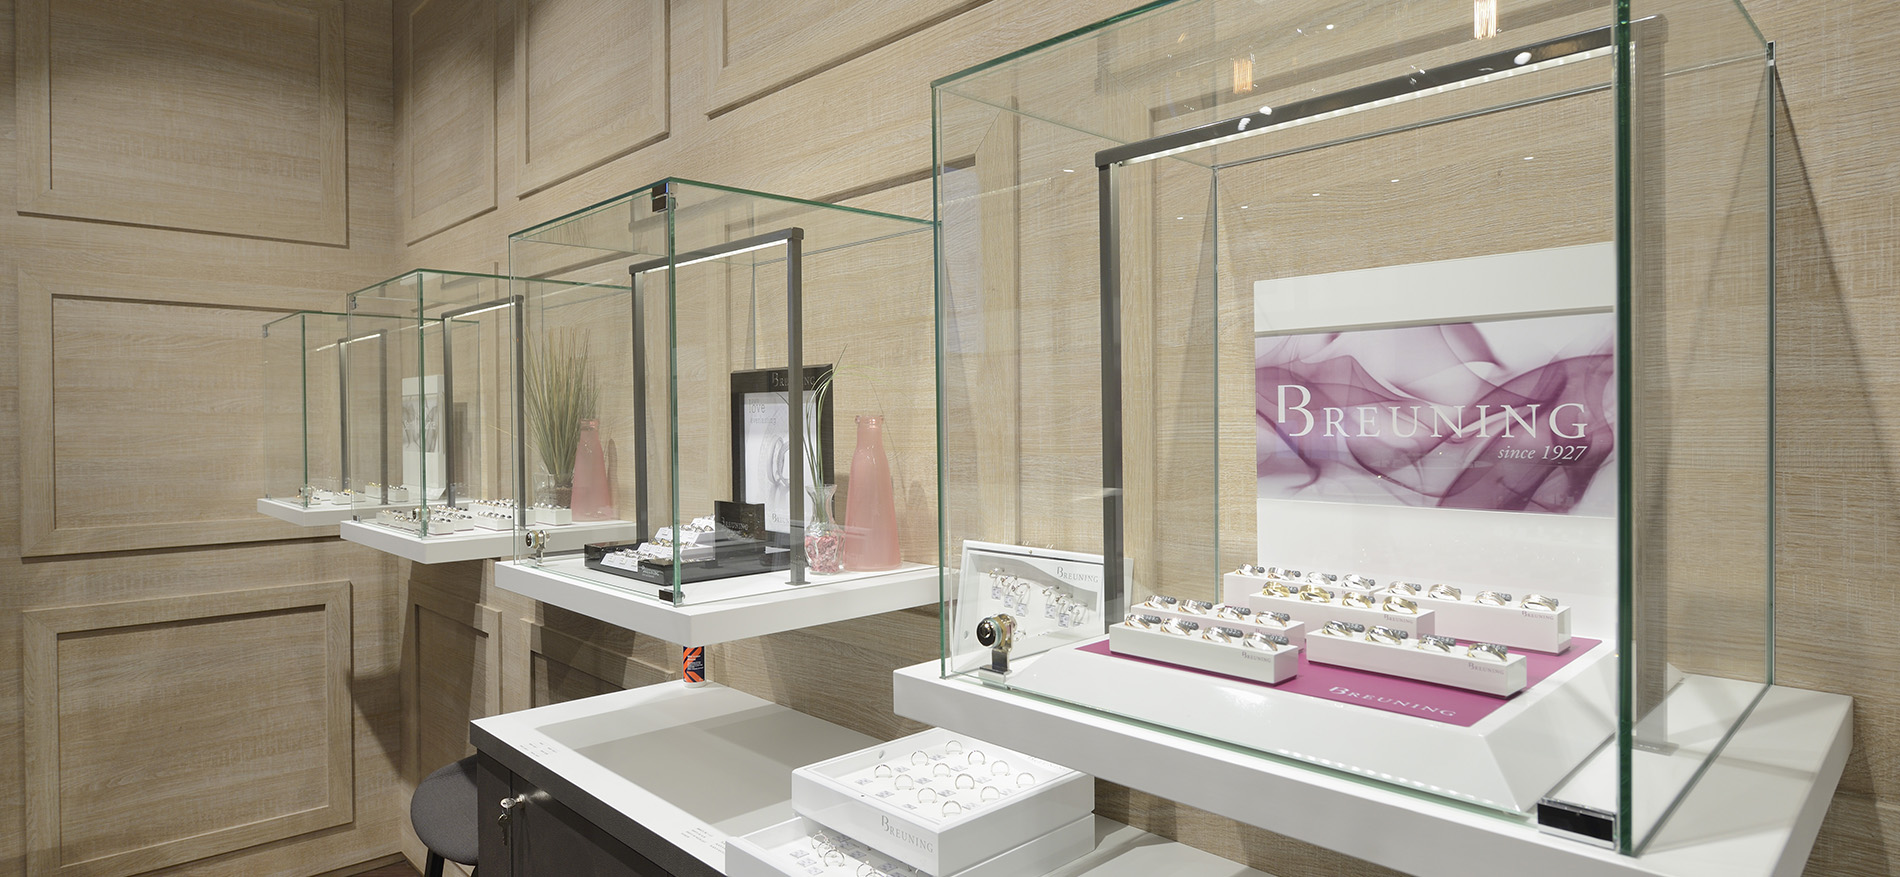 Breuning – Winkelconcept voor trouwringenspecialist in Stuttgart (DE) - Juweliers